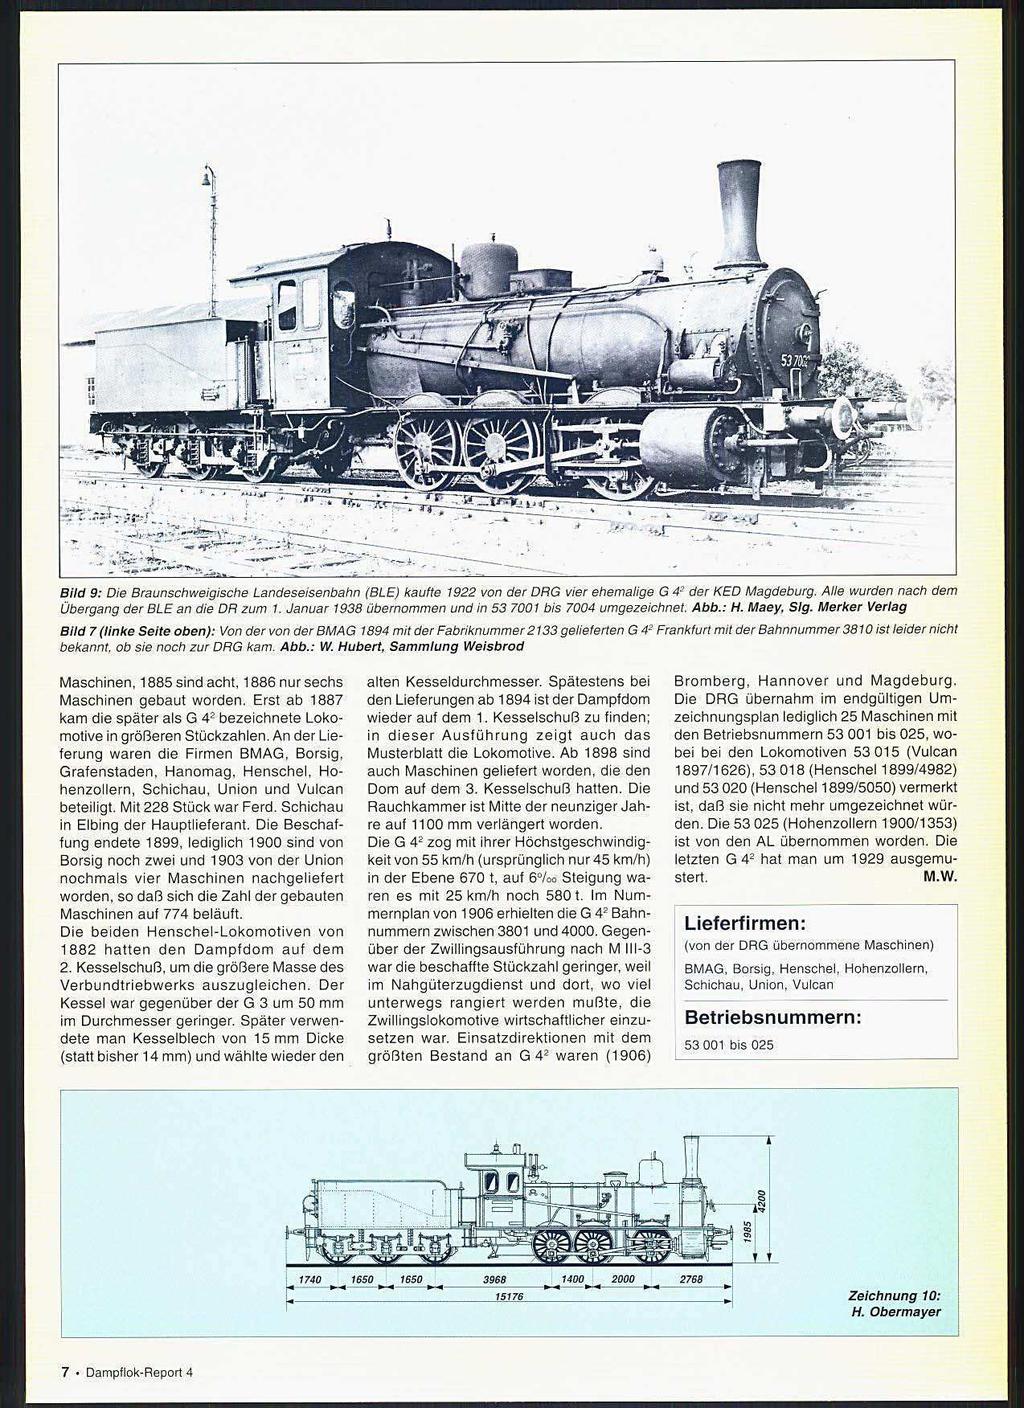 Bild 9: Die Braunschweigische Landeseisenbahn (BLE) kaufte 1922 von der DRG vier ehemalige G 42 der KED Magdeburg. Alle wurden nach dem Übergang der BLE an die DR zum 1.